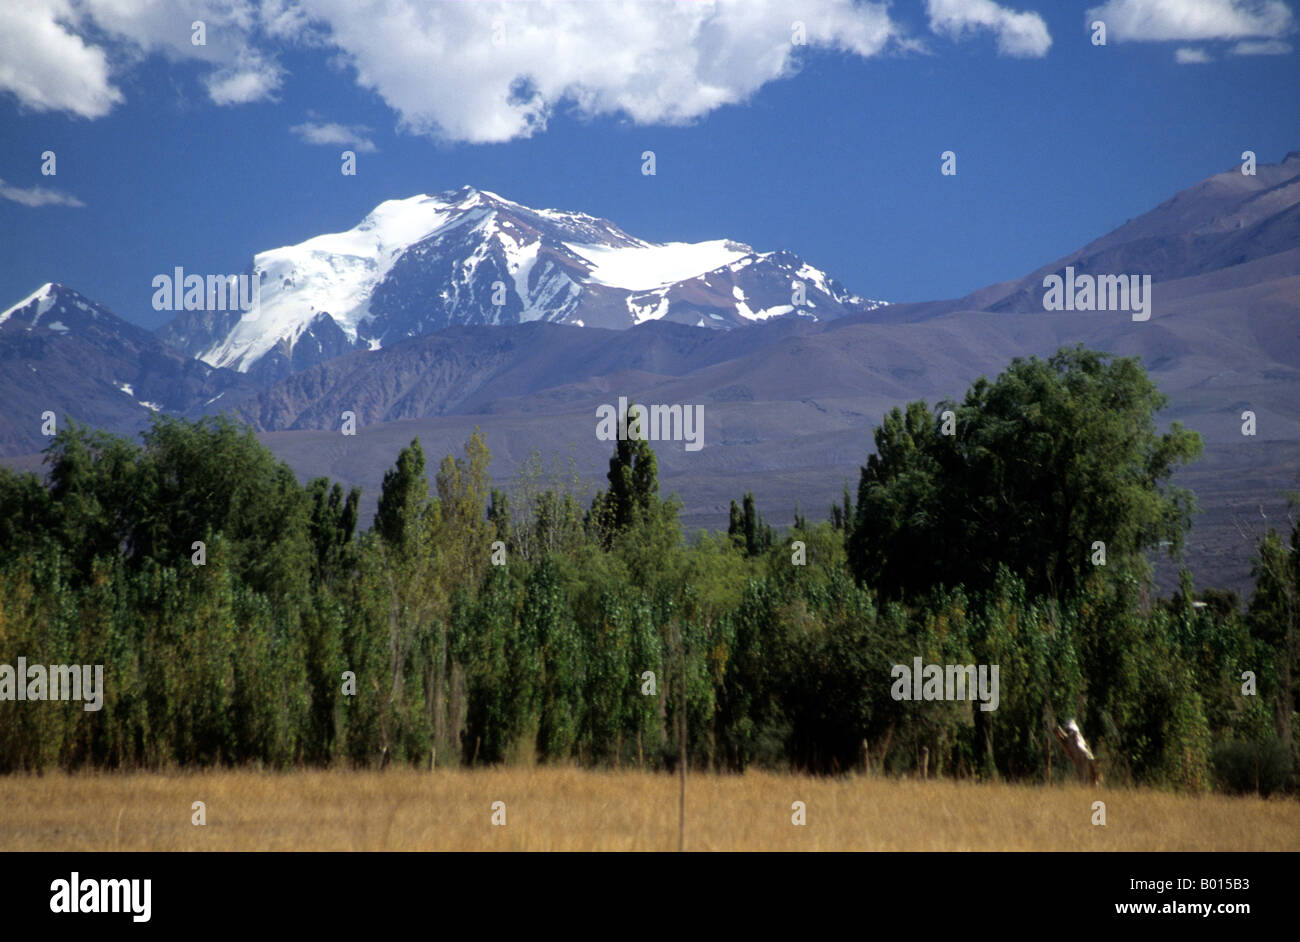 Mt. Mercedario und Pappel Bäume in der Nähe von Barreal, Calingasta Tal, Provinz San Juan, Argentinien Stockfoto